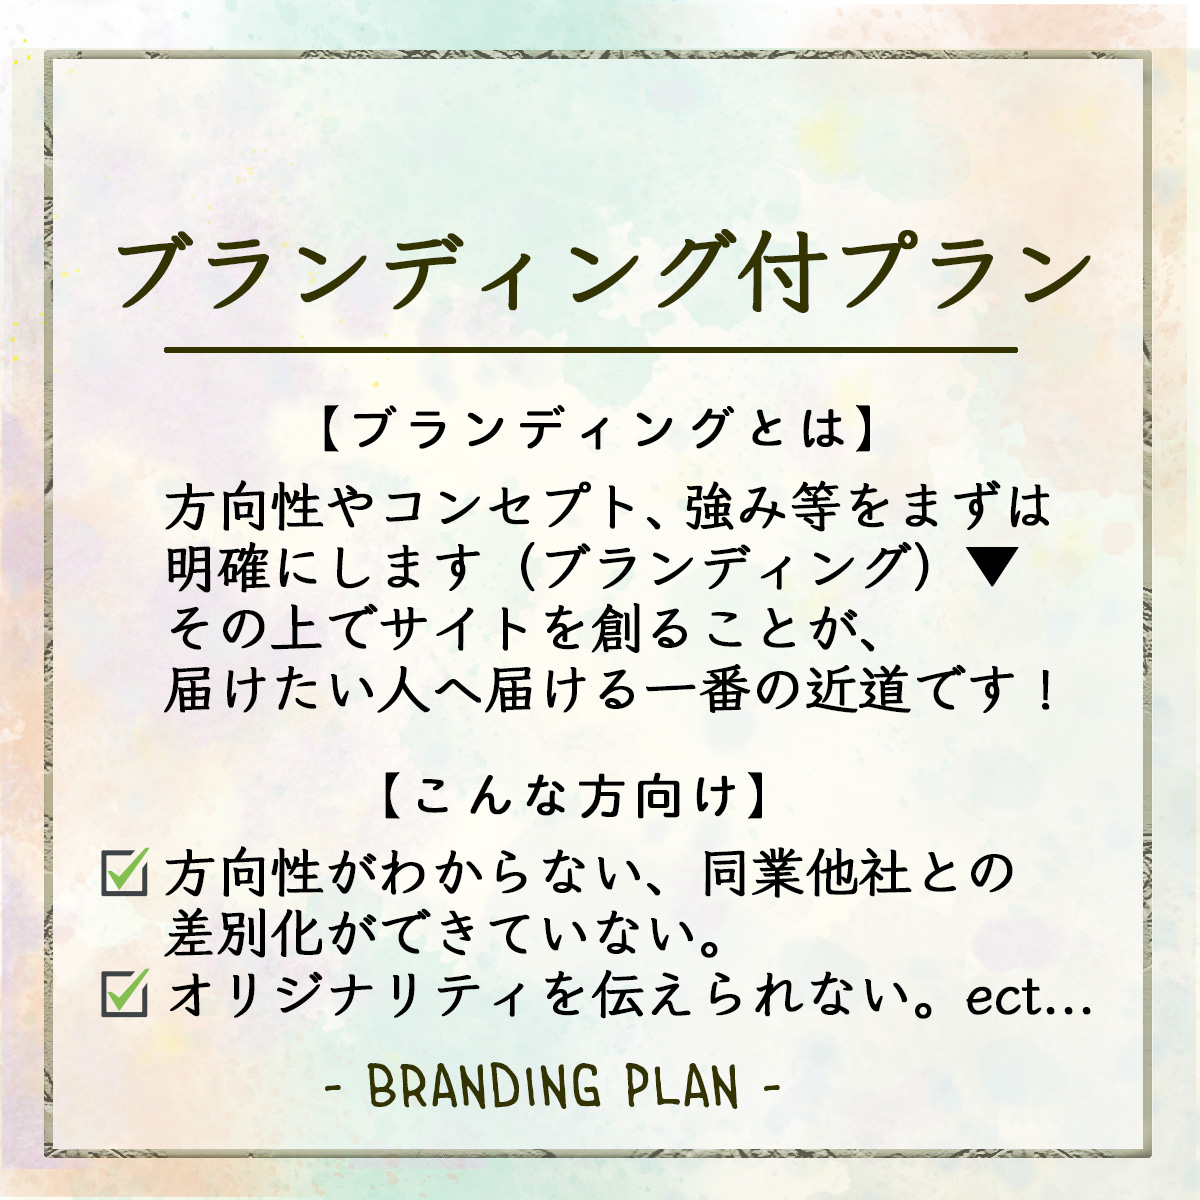 brandingplan2